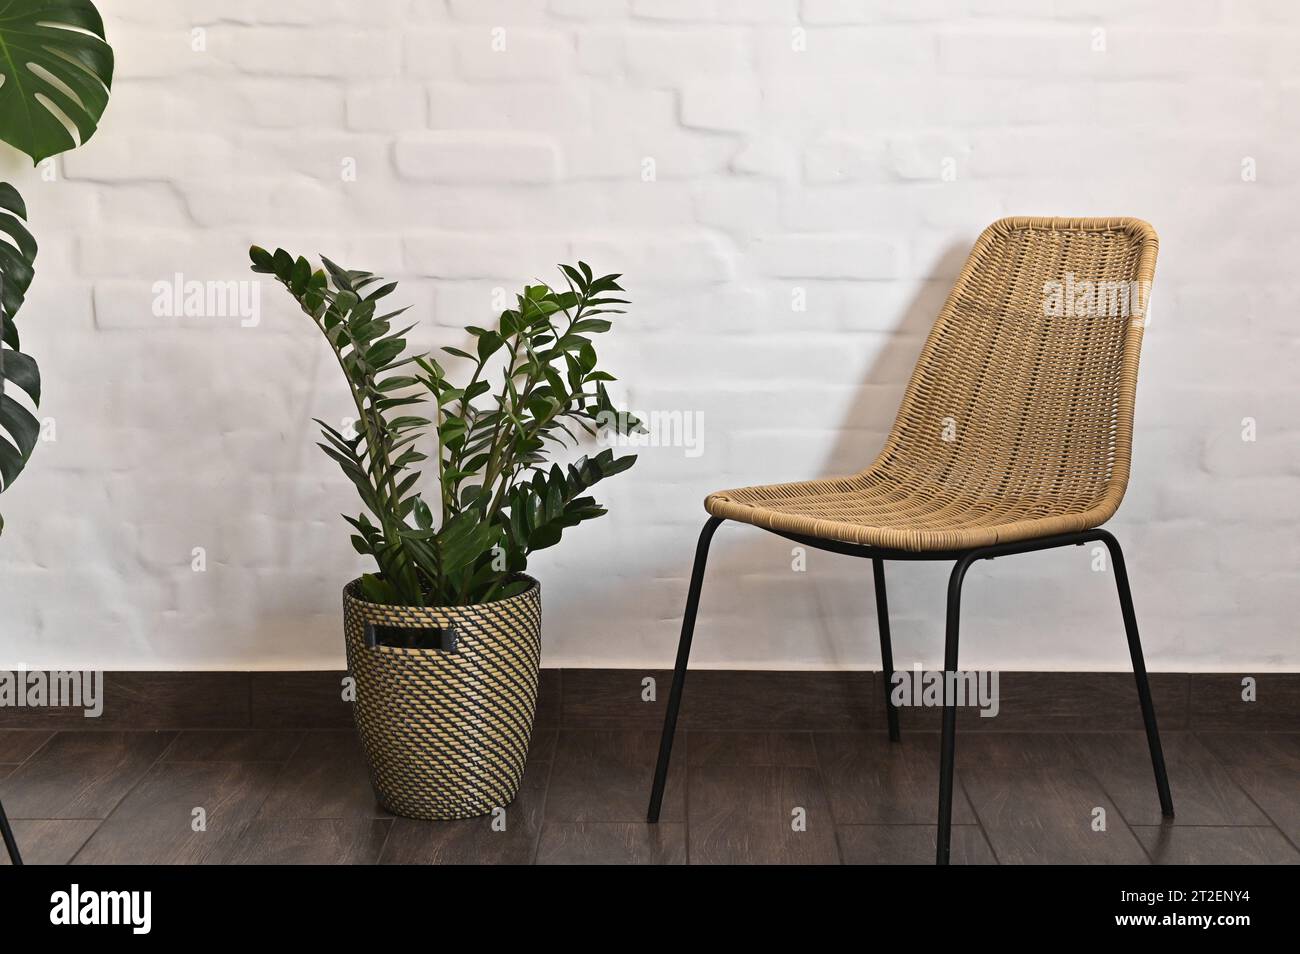 Ein Stuhl und eine Zimmerpflanze in einem Blumentopf. Vor dem Hintergrund einer weißen Ziegelmauer. Stockfoto